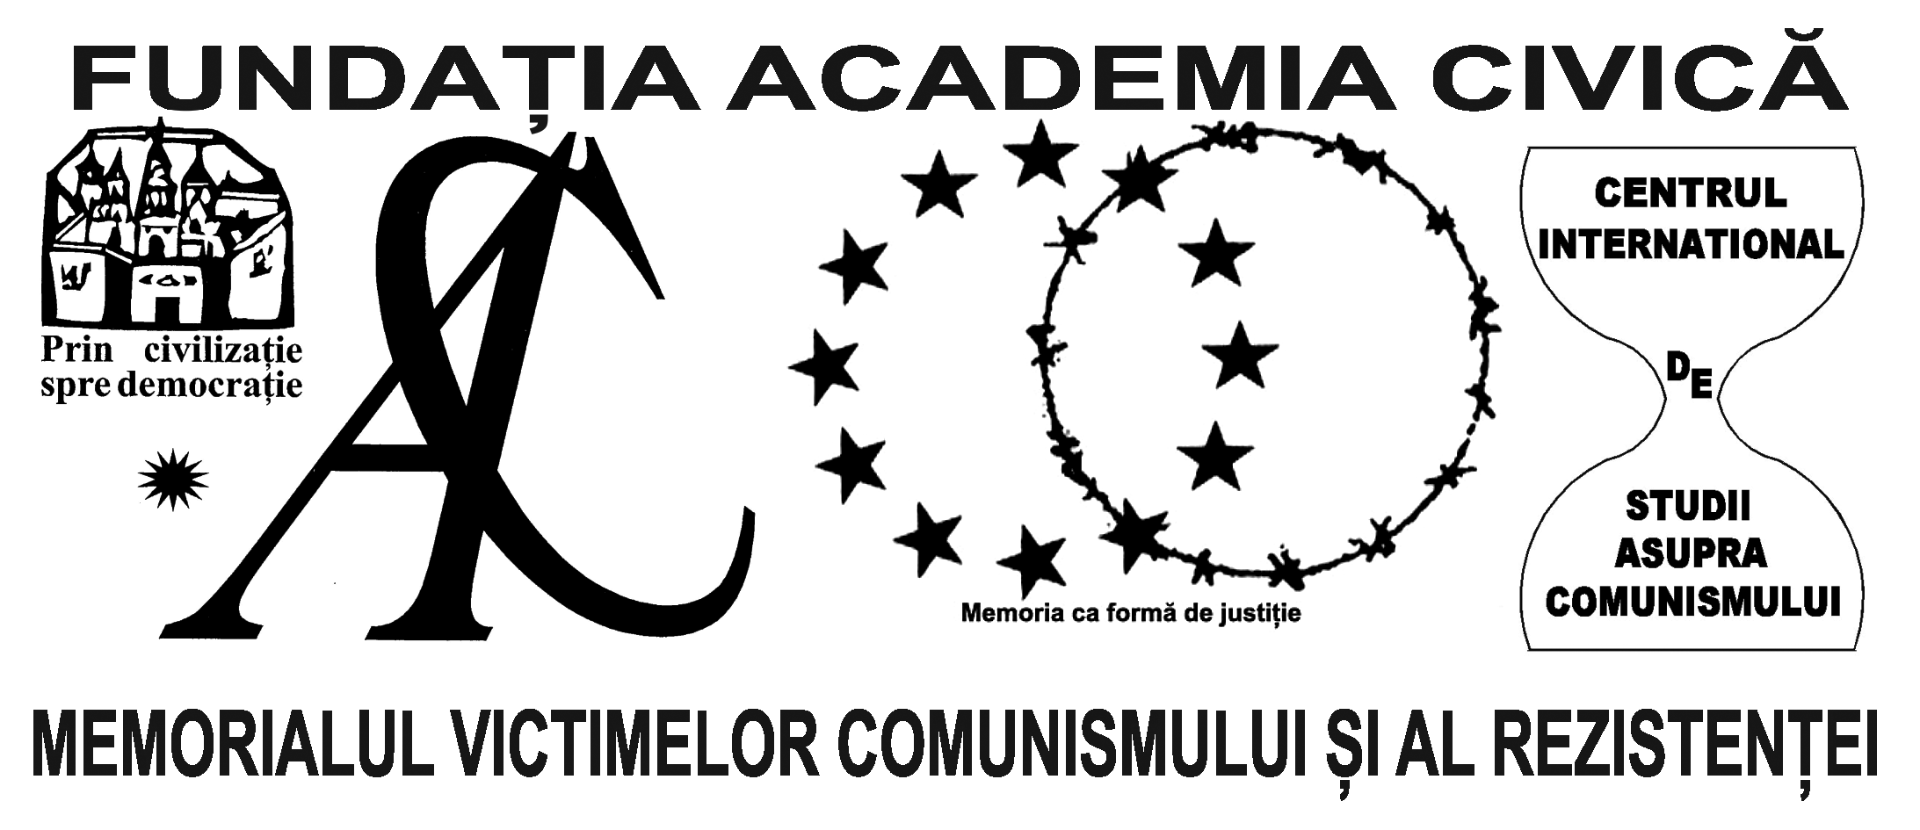 Logo Academia Civica